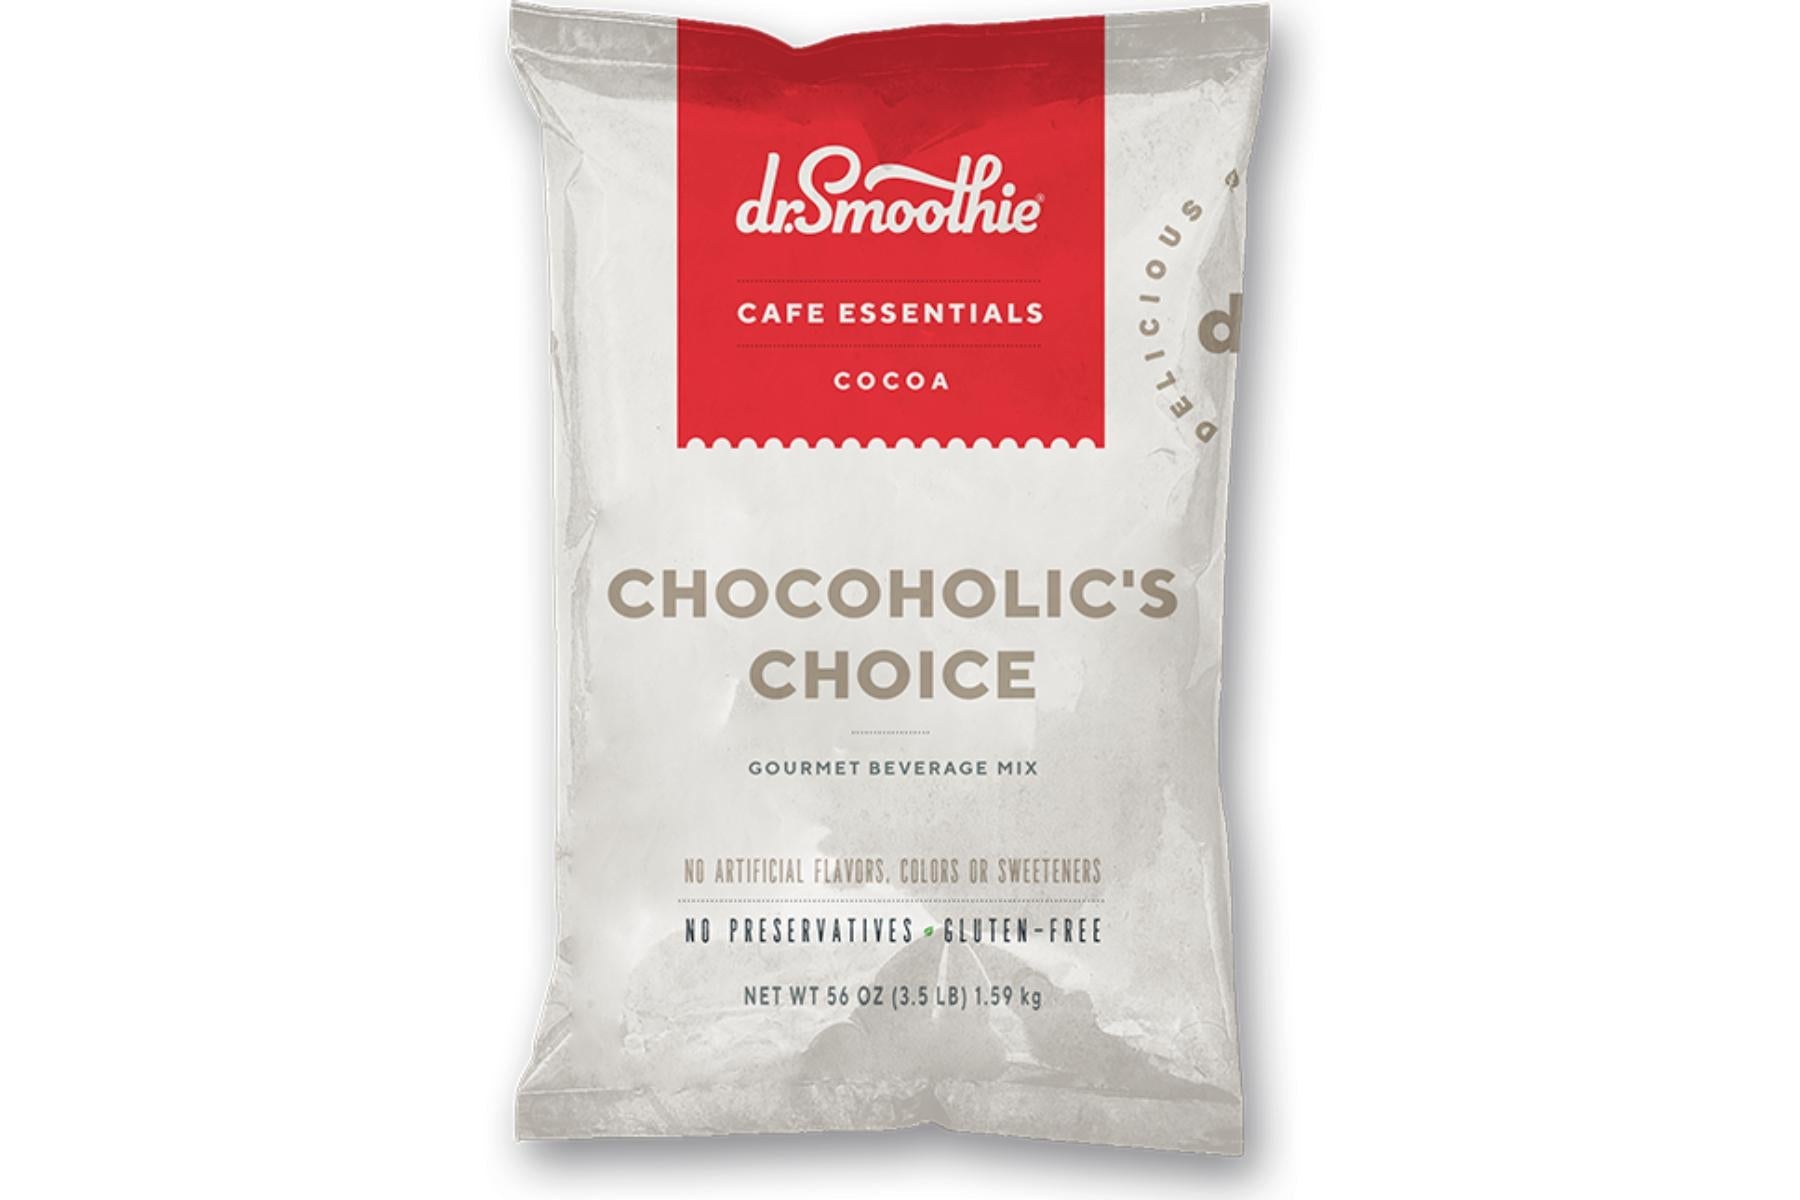 Dr. Smoothie Cafe Essentials Cocoa - 3.5lb Bulk Bag: Chocoholic's Choice